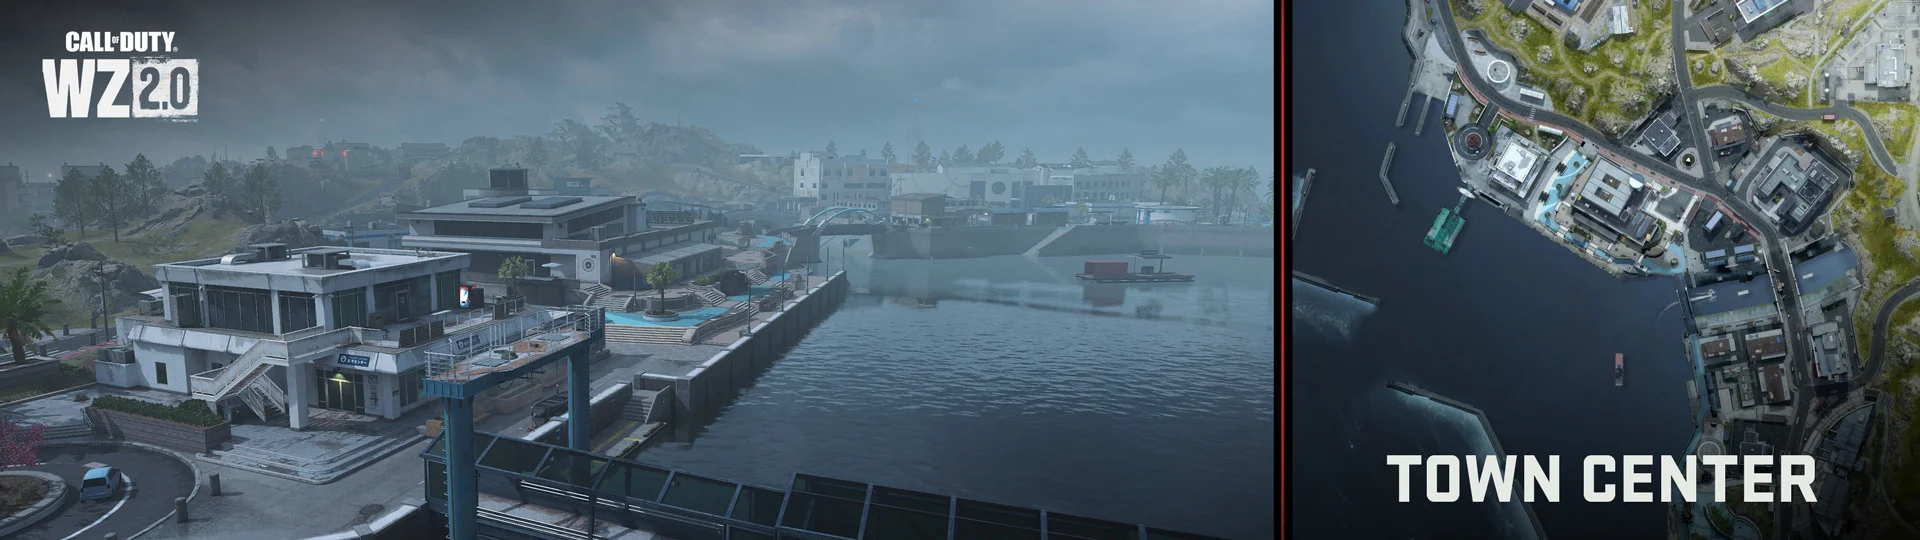 Авторы Call of Duty: Warzone 2 представили новую карту в японском стиле - фото 1